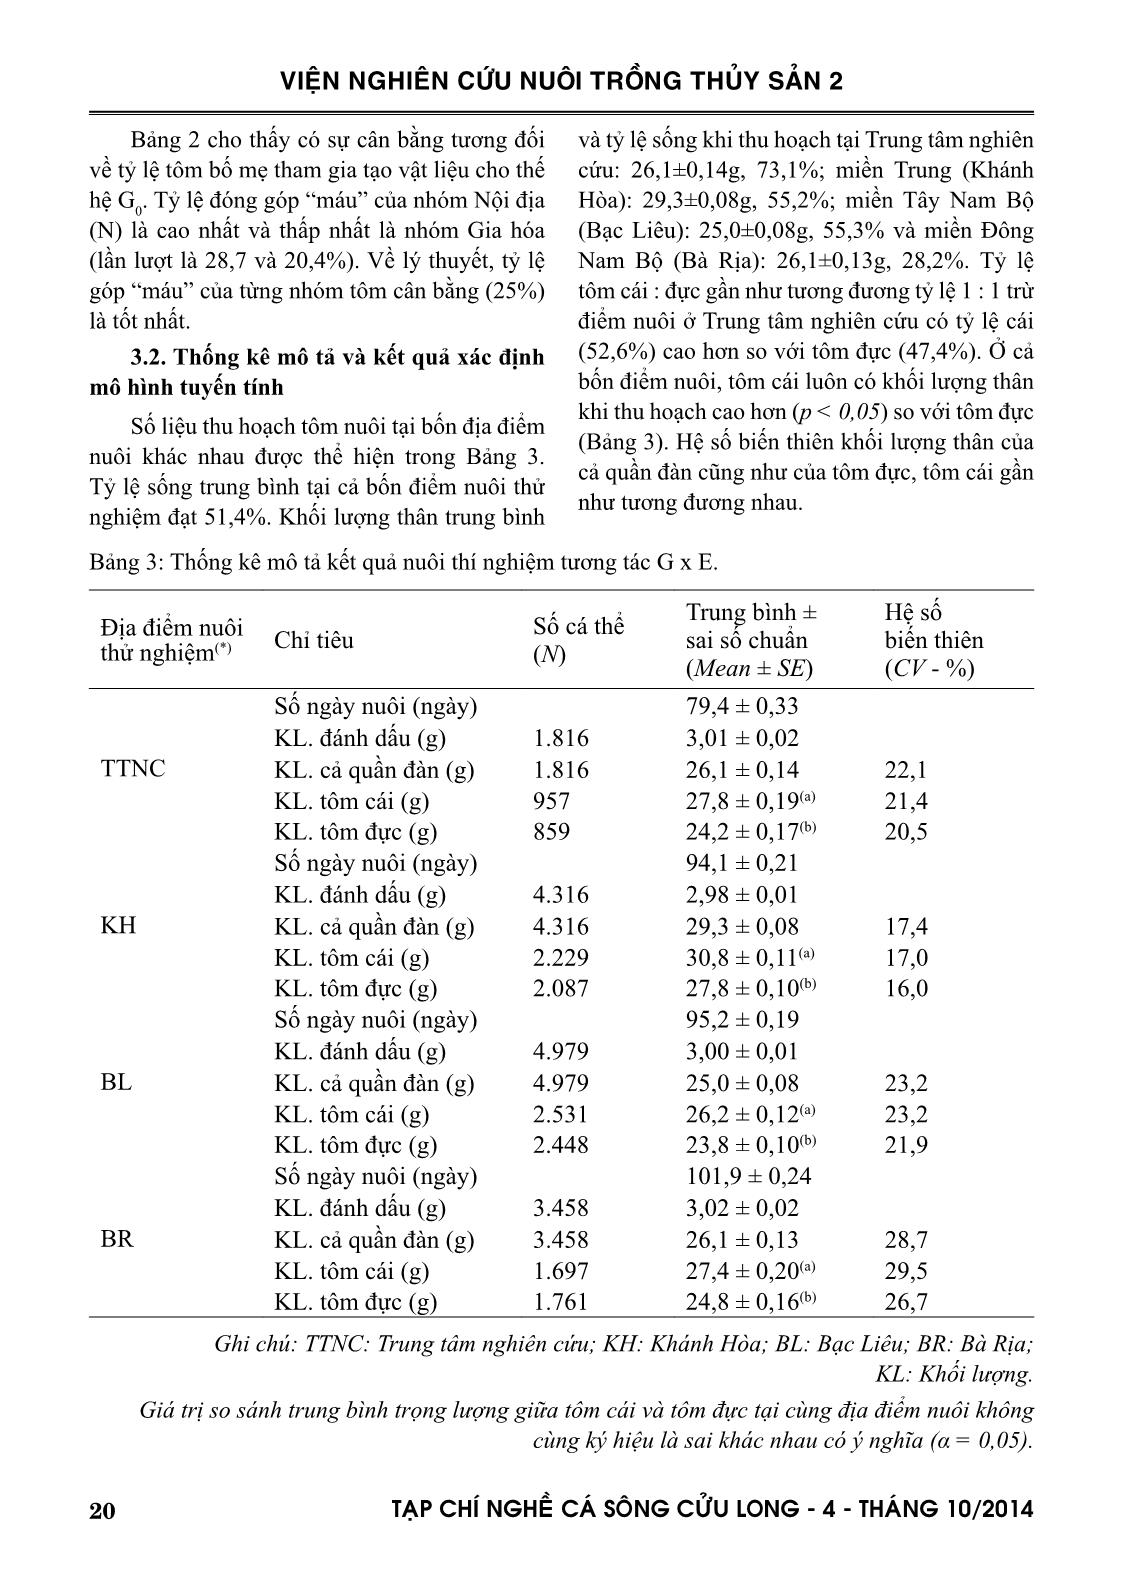 Đánh giá nguồn vật liệu ban đầu cho chọn giống tôm sú Penaeus monodon trang 6